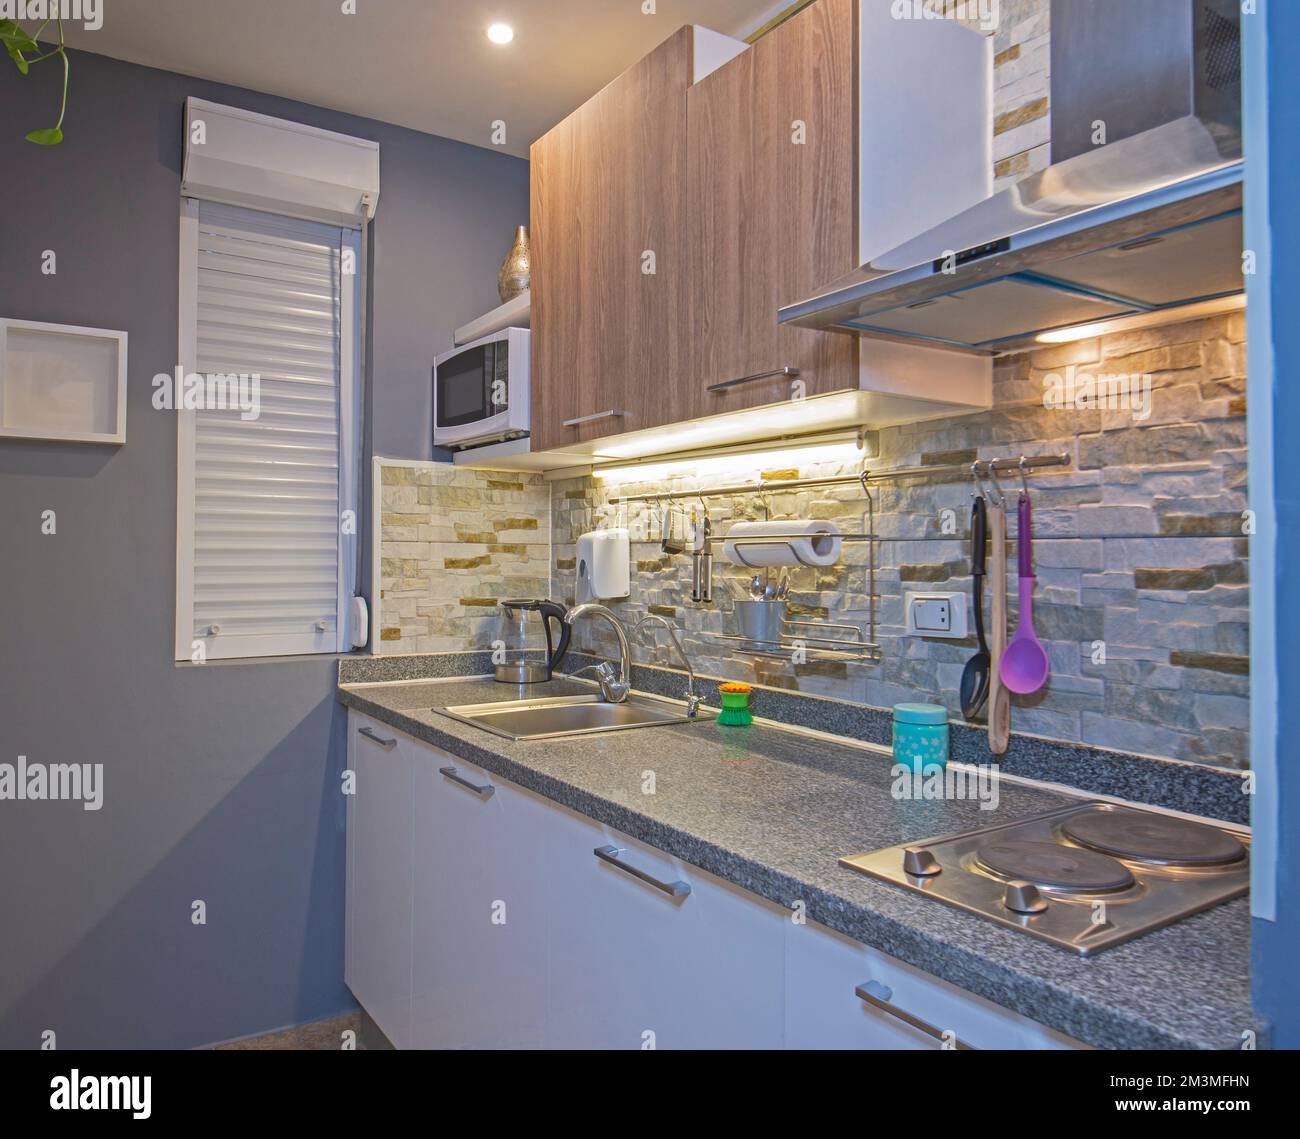 Zona cucina in appartamento di lusso show home mostra interior design decor e arredamento Foto Stock